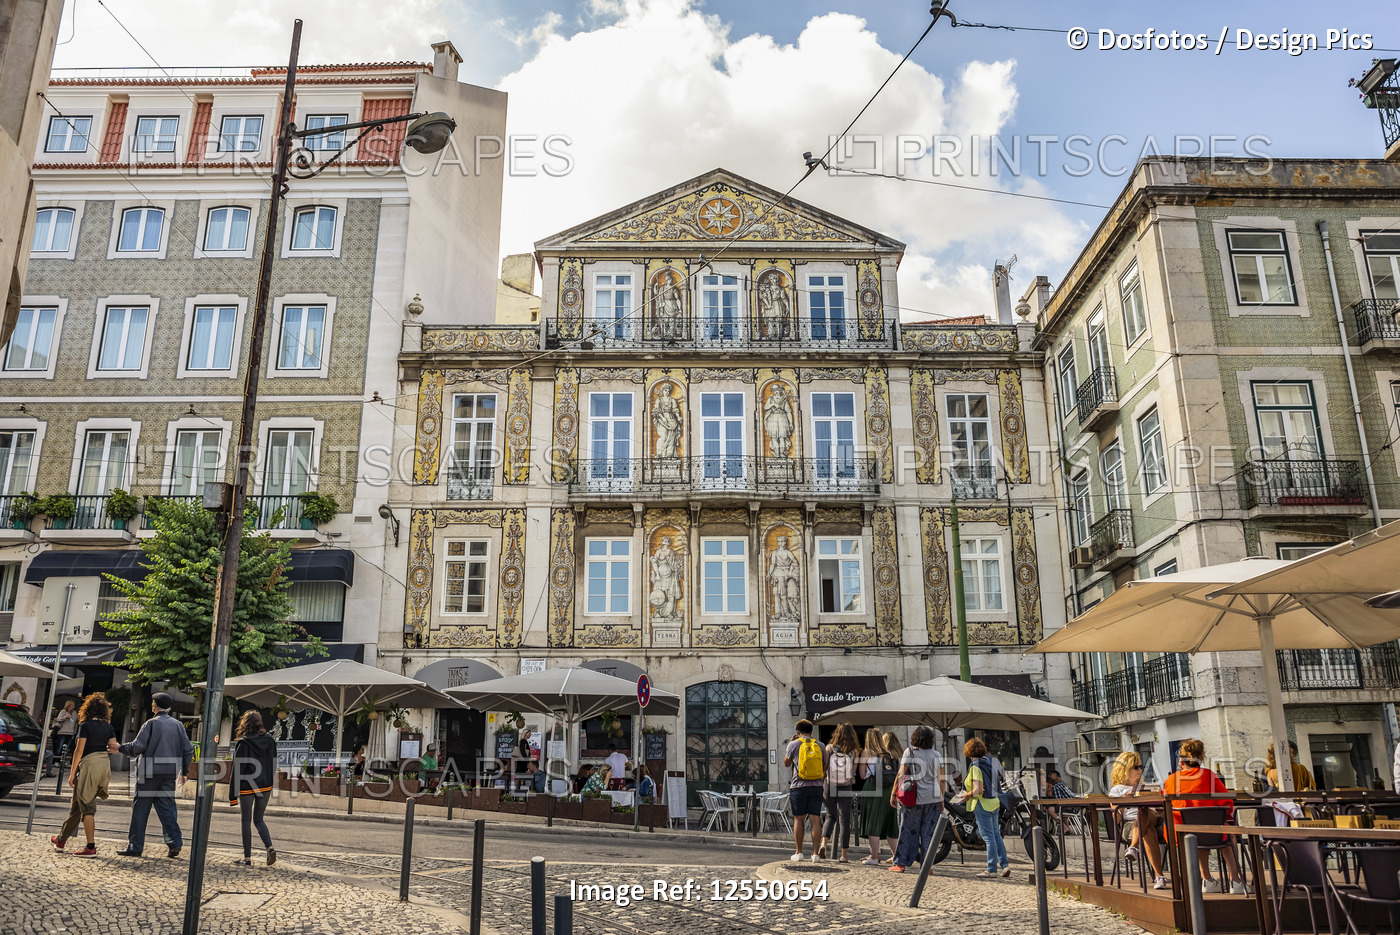 Pedestrians and patios in a town square, Bairro Alto, Lisbon; Lisbon, Portugal